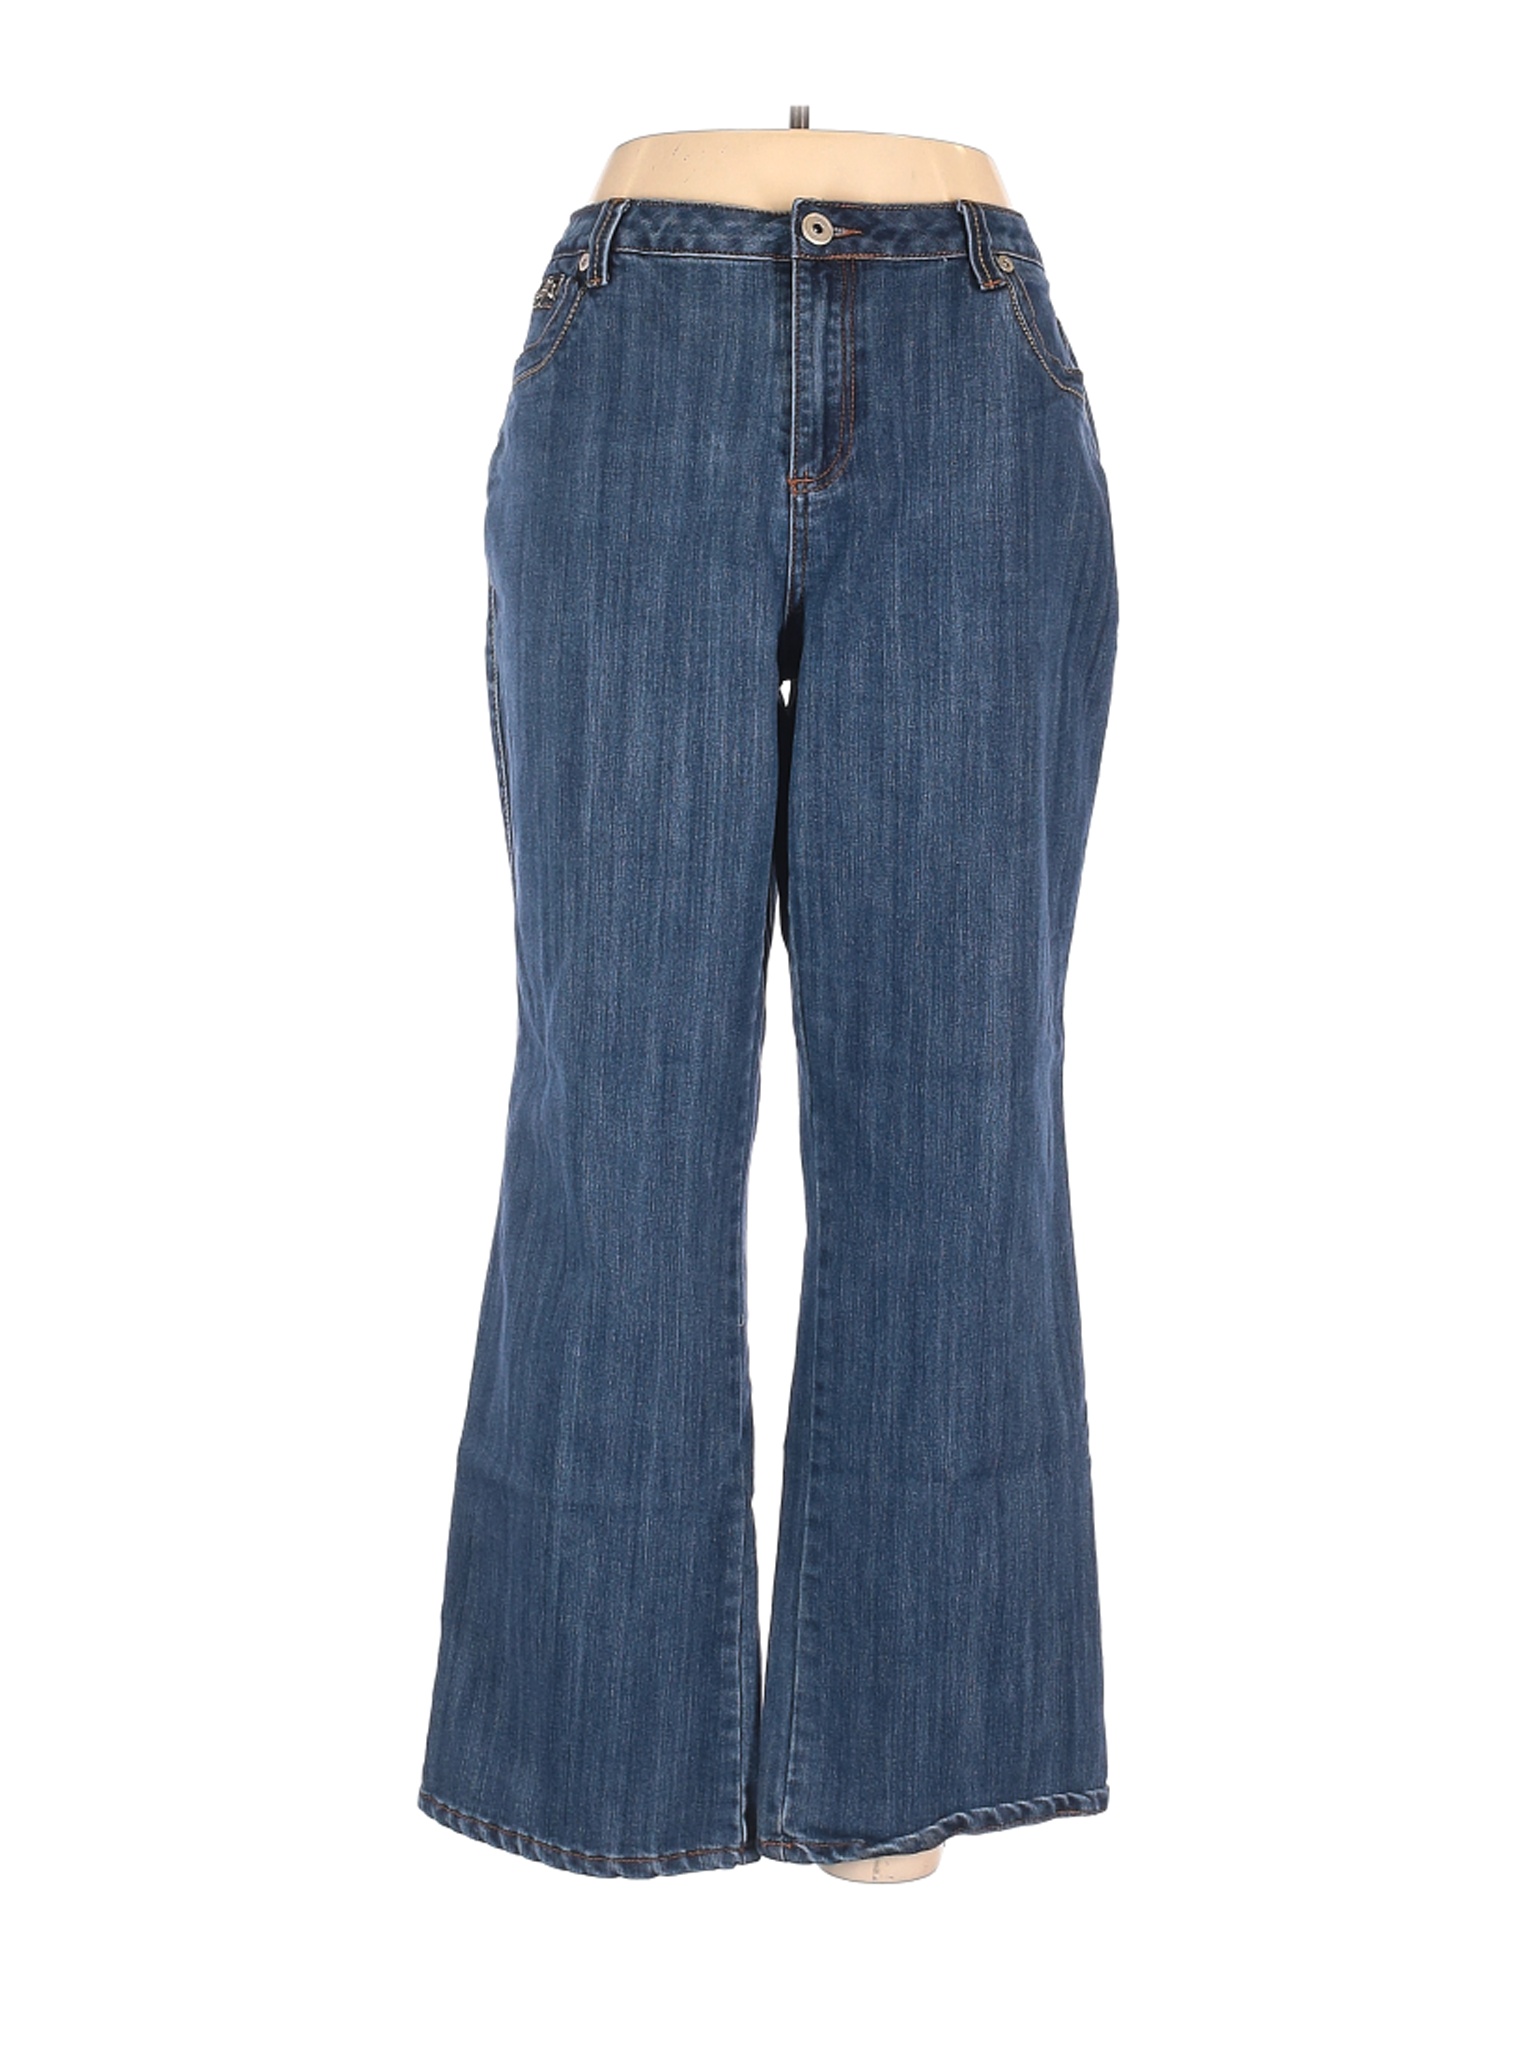 Westport Women Blue Jeans 18 Plus | eBay